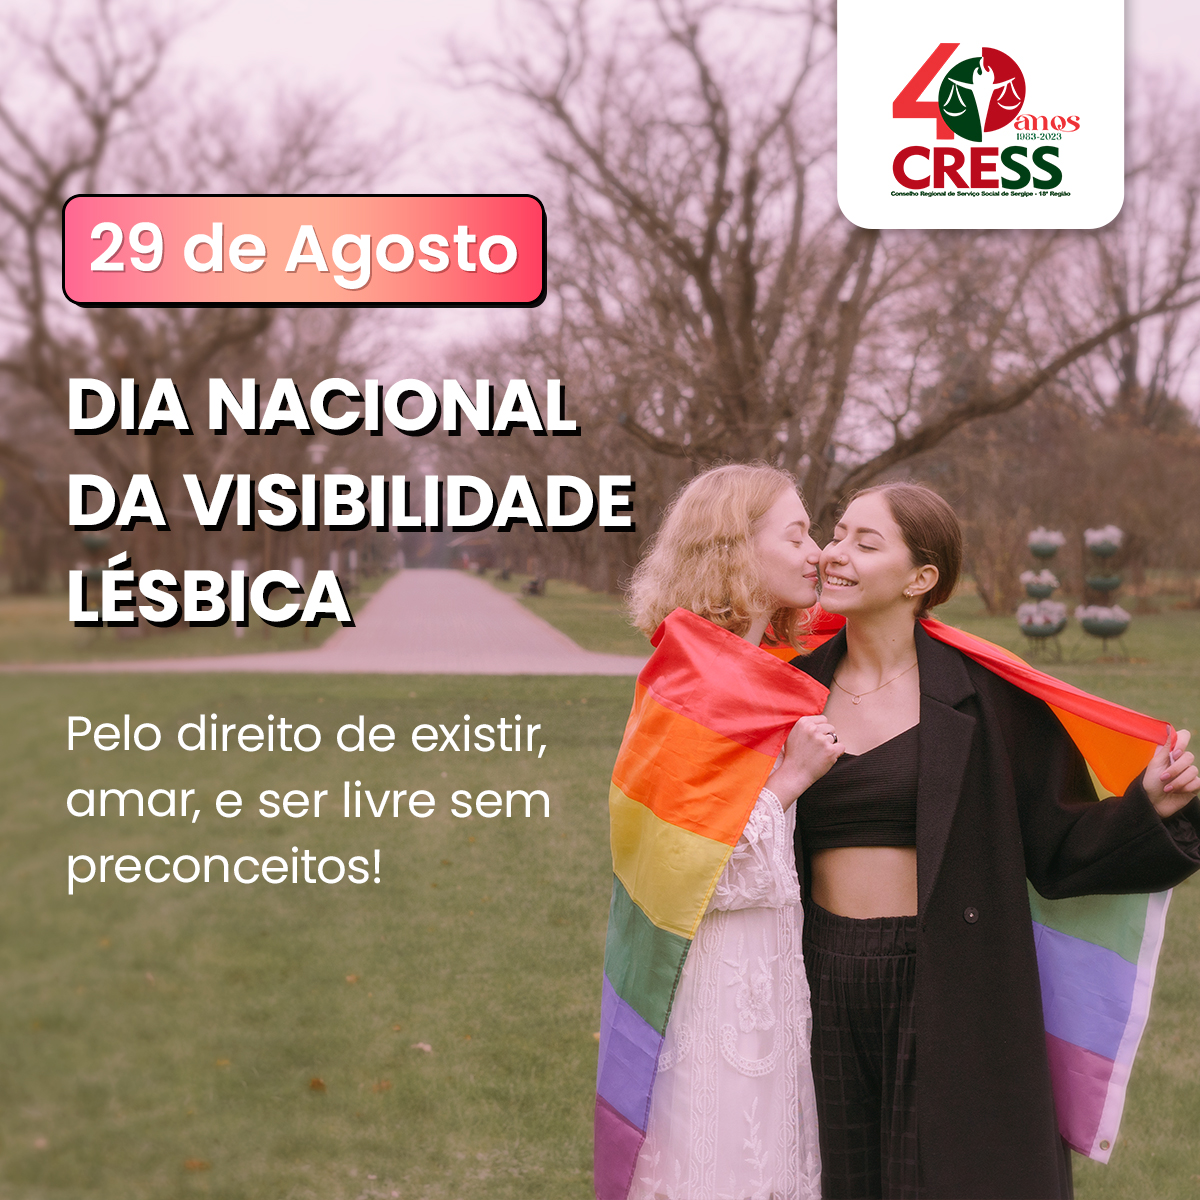 CRESS-SE destaca Dia da Visibilidade Lésbica e importância do combate à lesbofobia